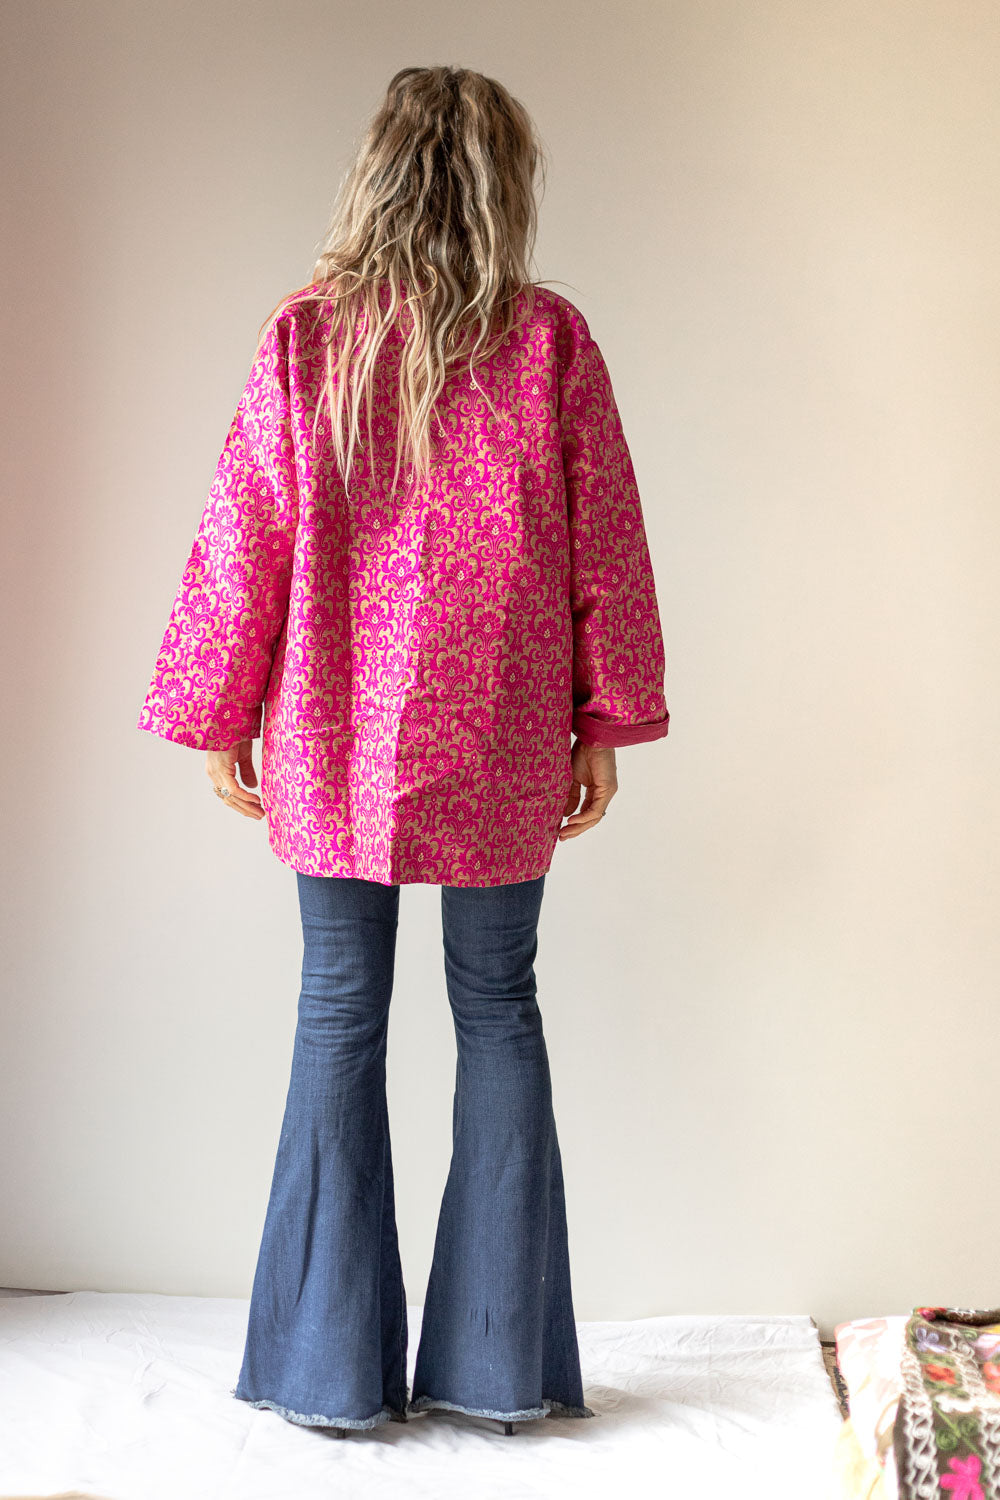 Chaqueta tipo kimono de edición limitada Rose (rosa brillante)